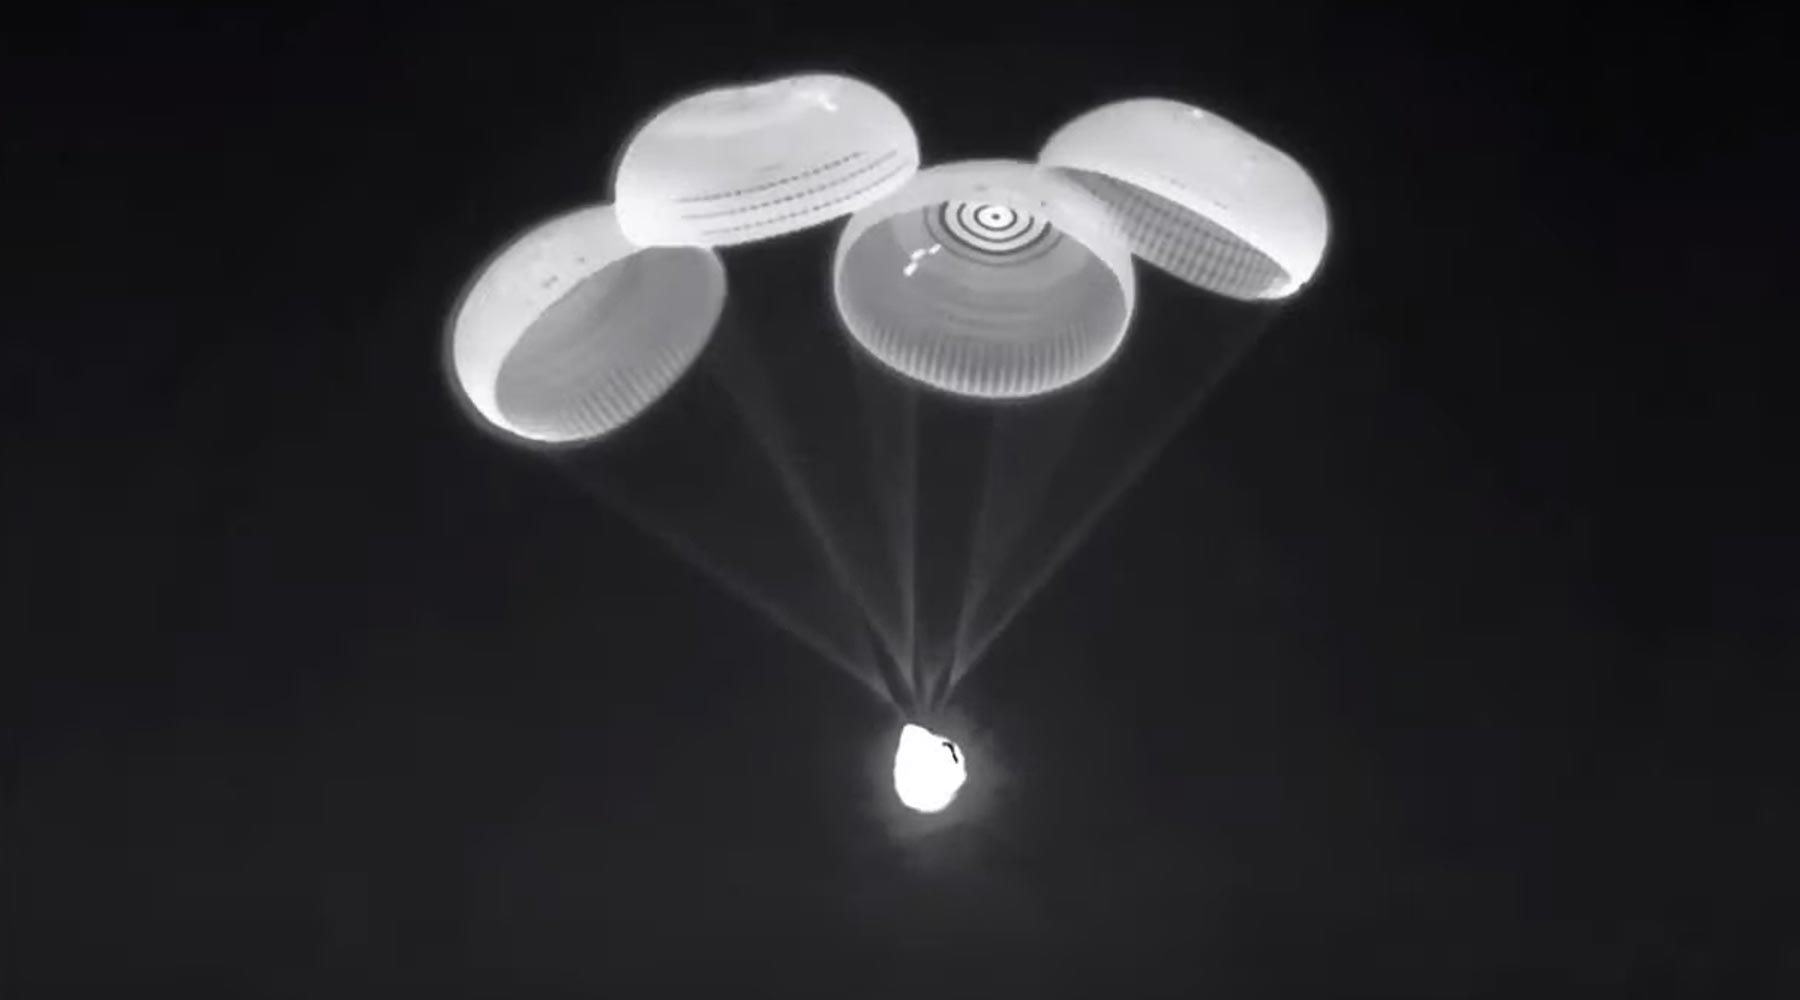 La nave espacial aterrizó con un paracaidas. (foto: SciTechDaily)